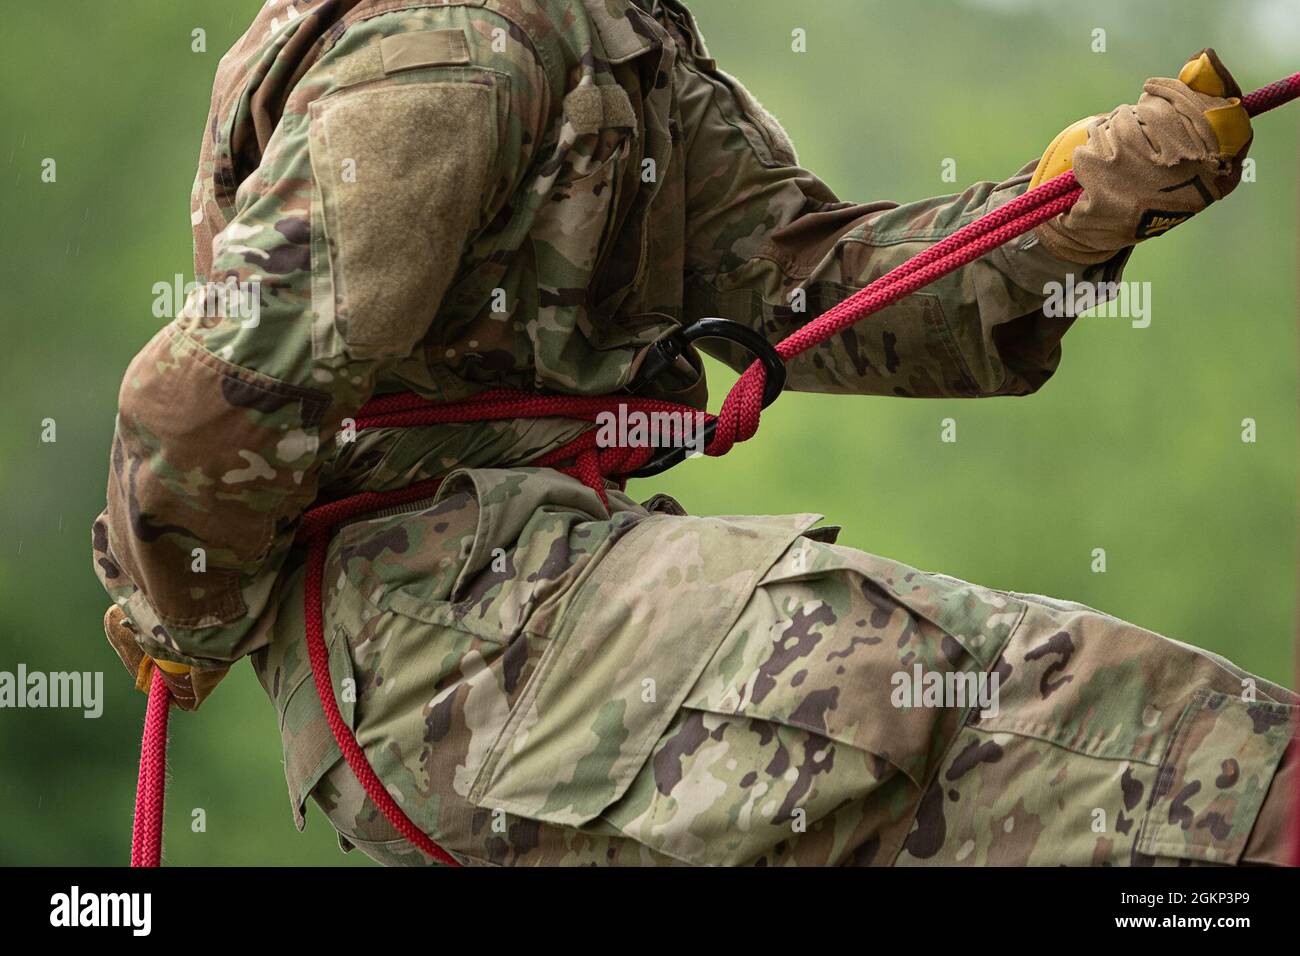 Zum Abseilen führt ein Seil durch einen verriegelenden Karabiner, der, wenn er richtig verwendet wird, Reibung erzeugt, um den Abseiler sicher auf den Boden zu senken. | Foto von Army Staff Sgt. Alexander Henninger Stockfoto